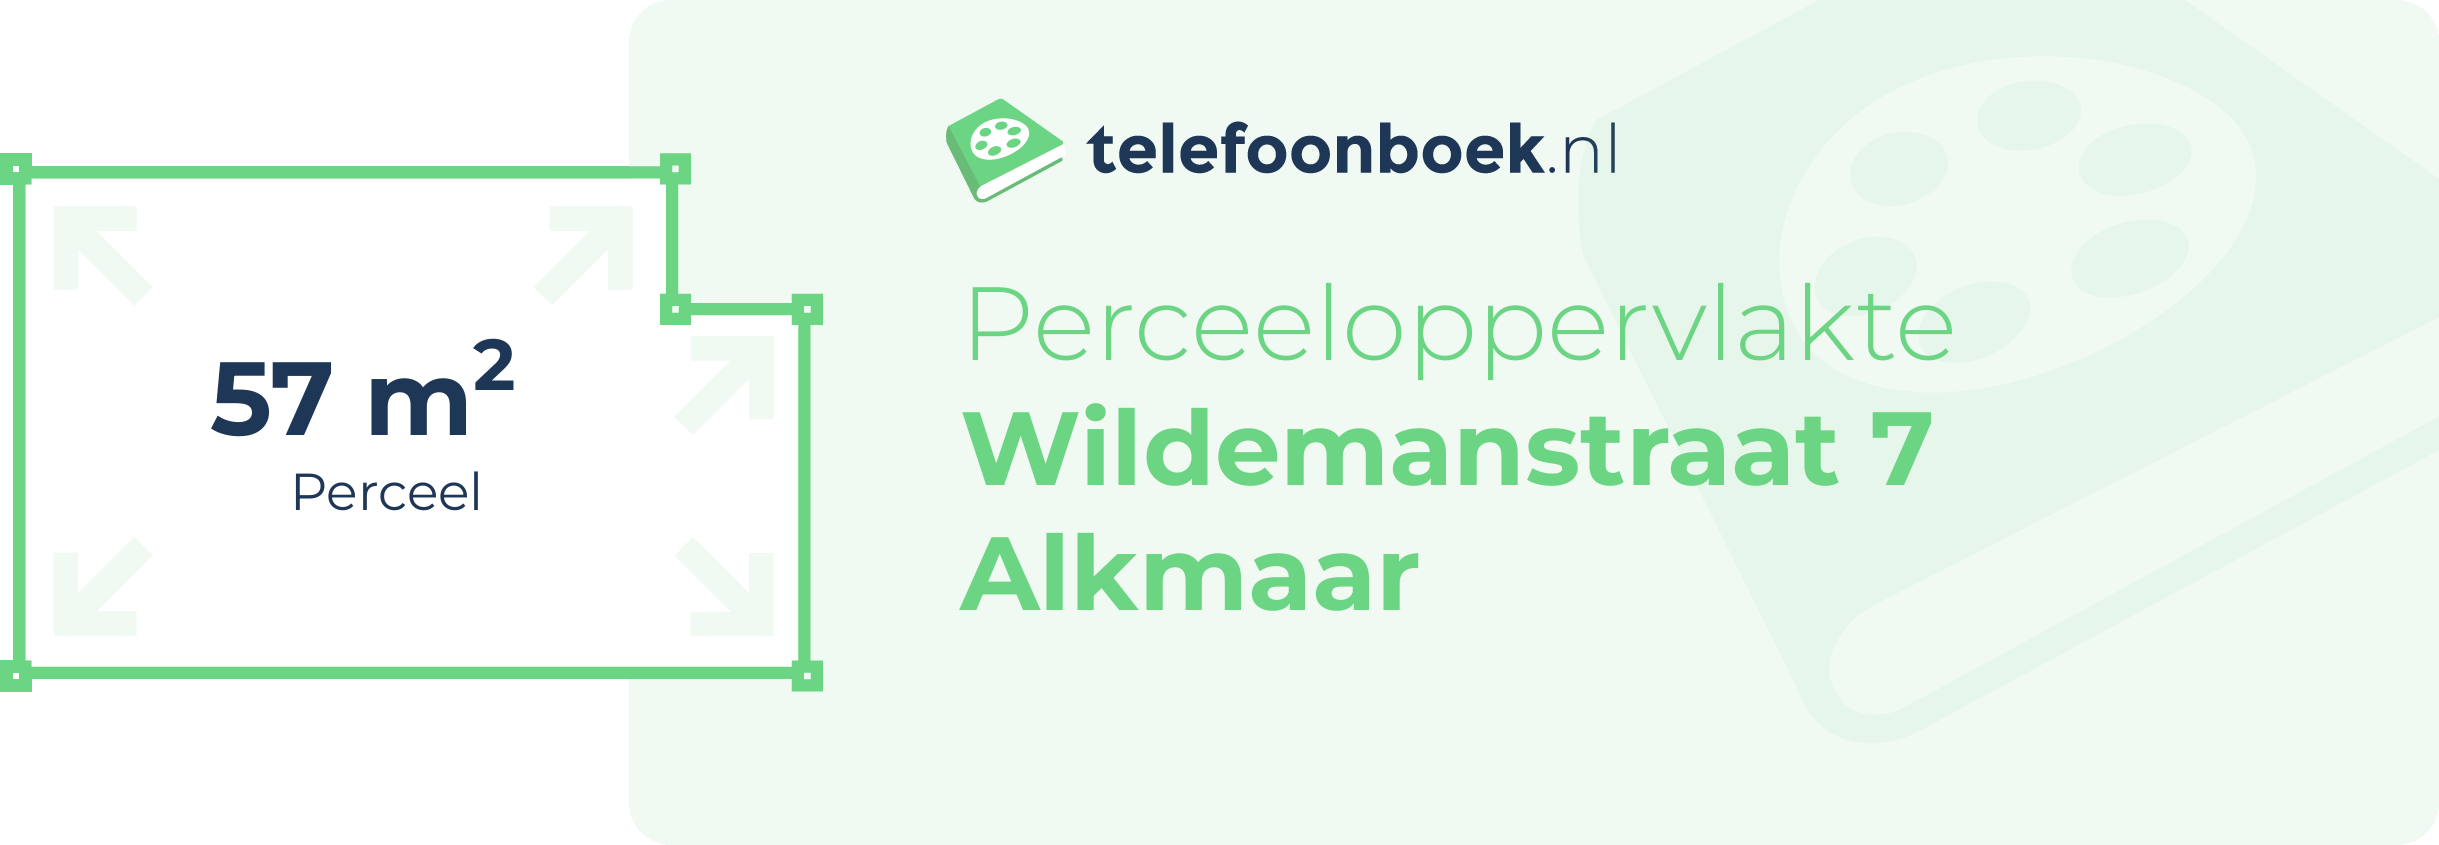 Perceeloppervlakte Wildemanstraat 7 Alkmaar